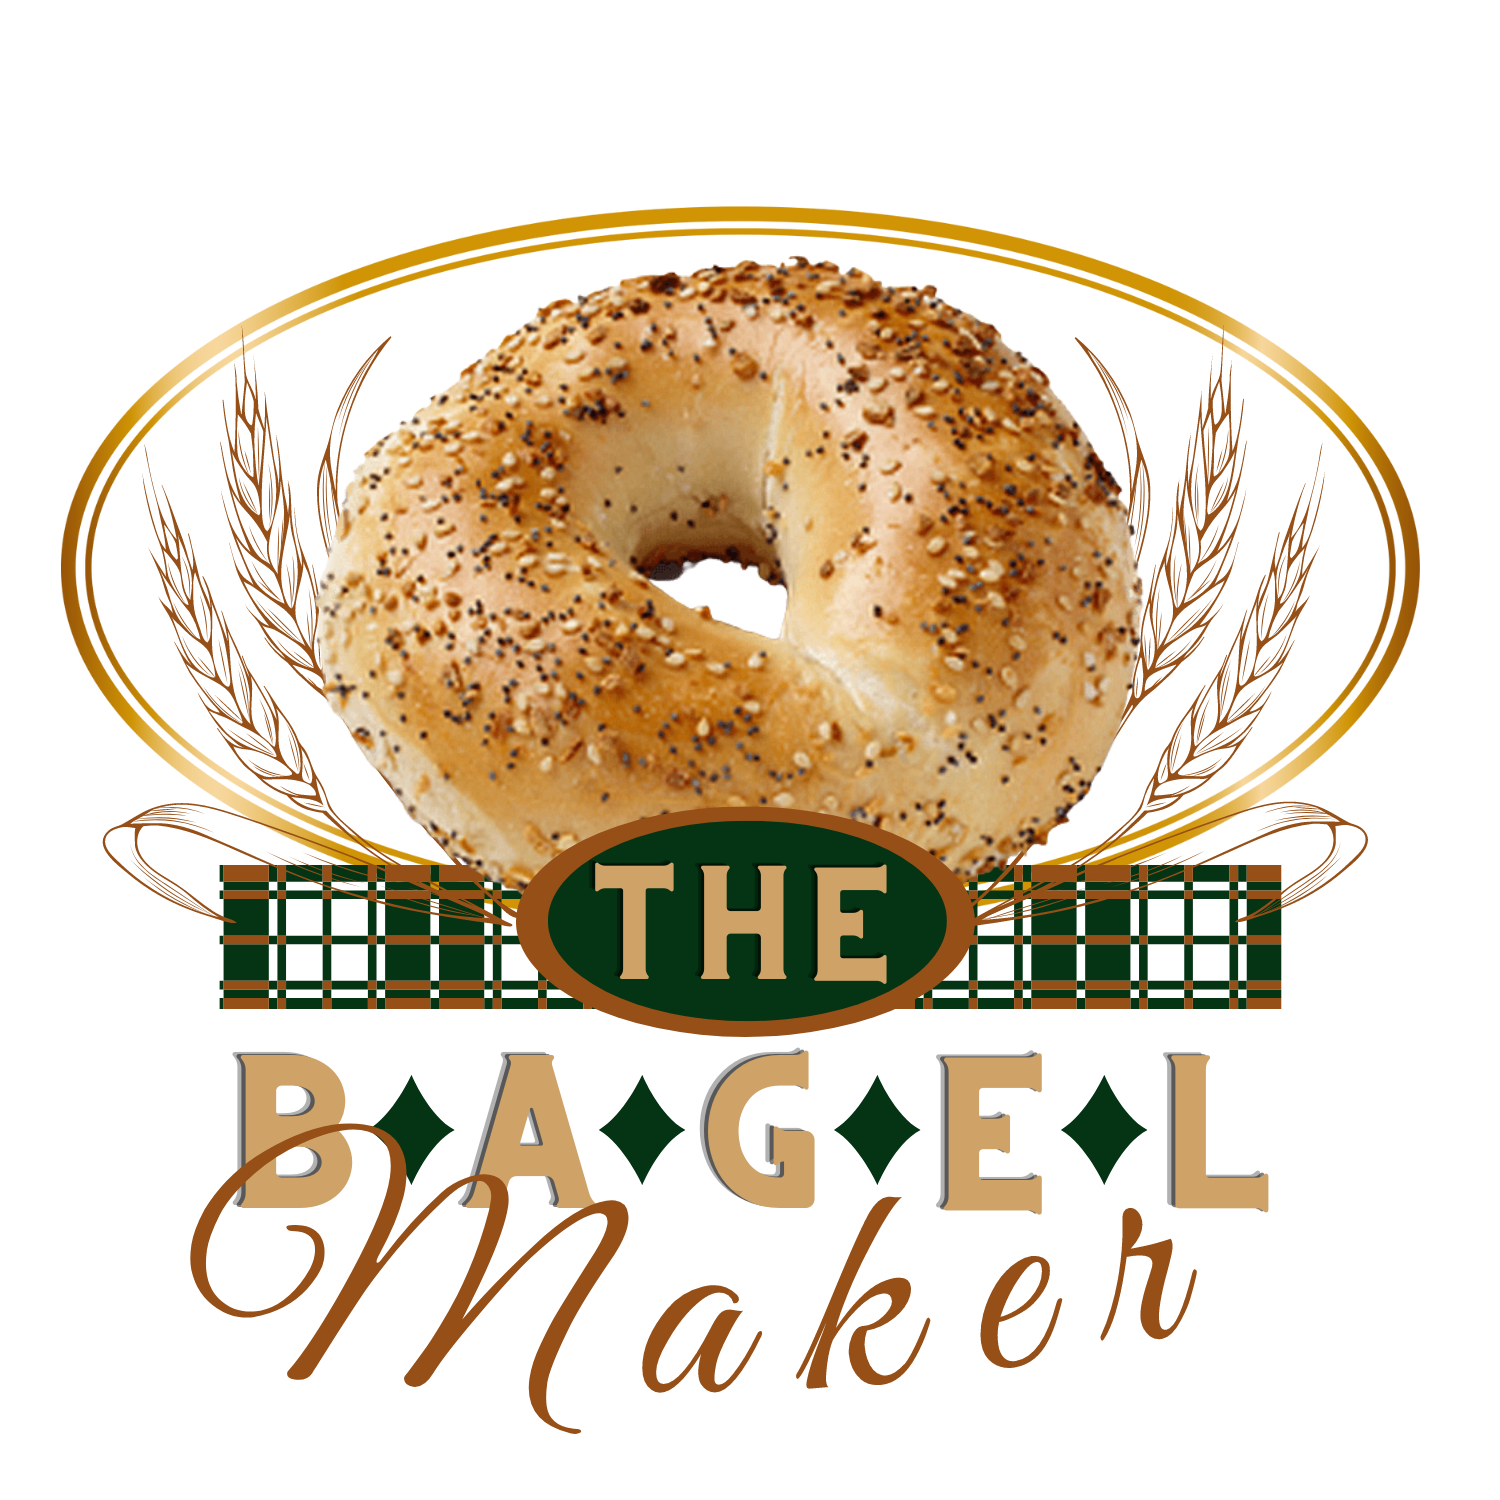 The Bagel Maker